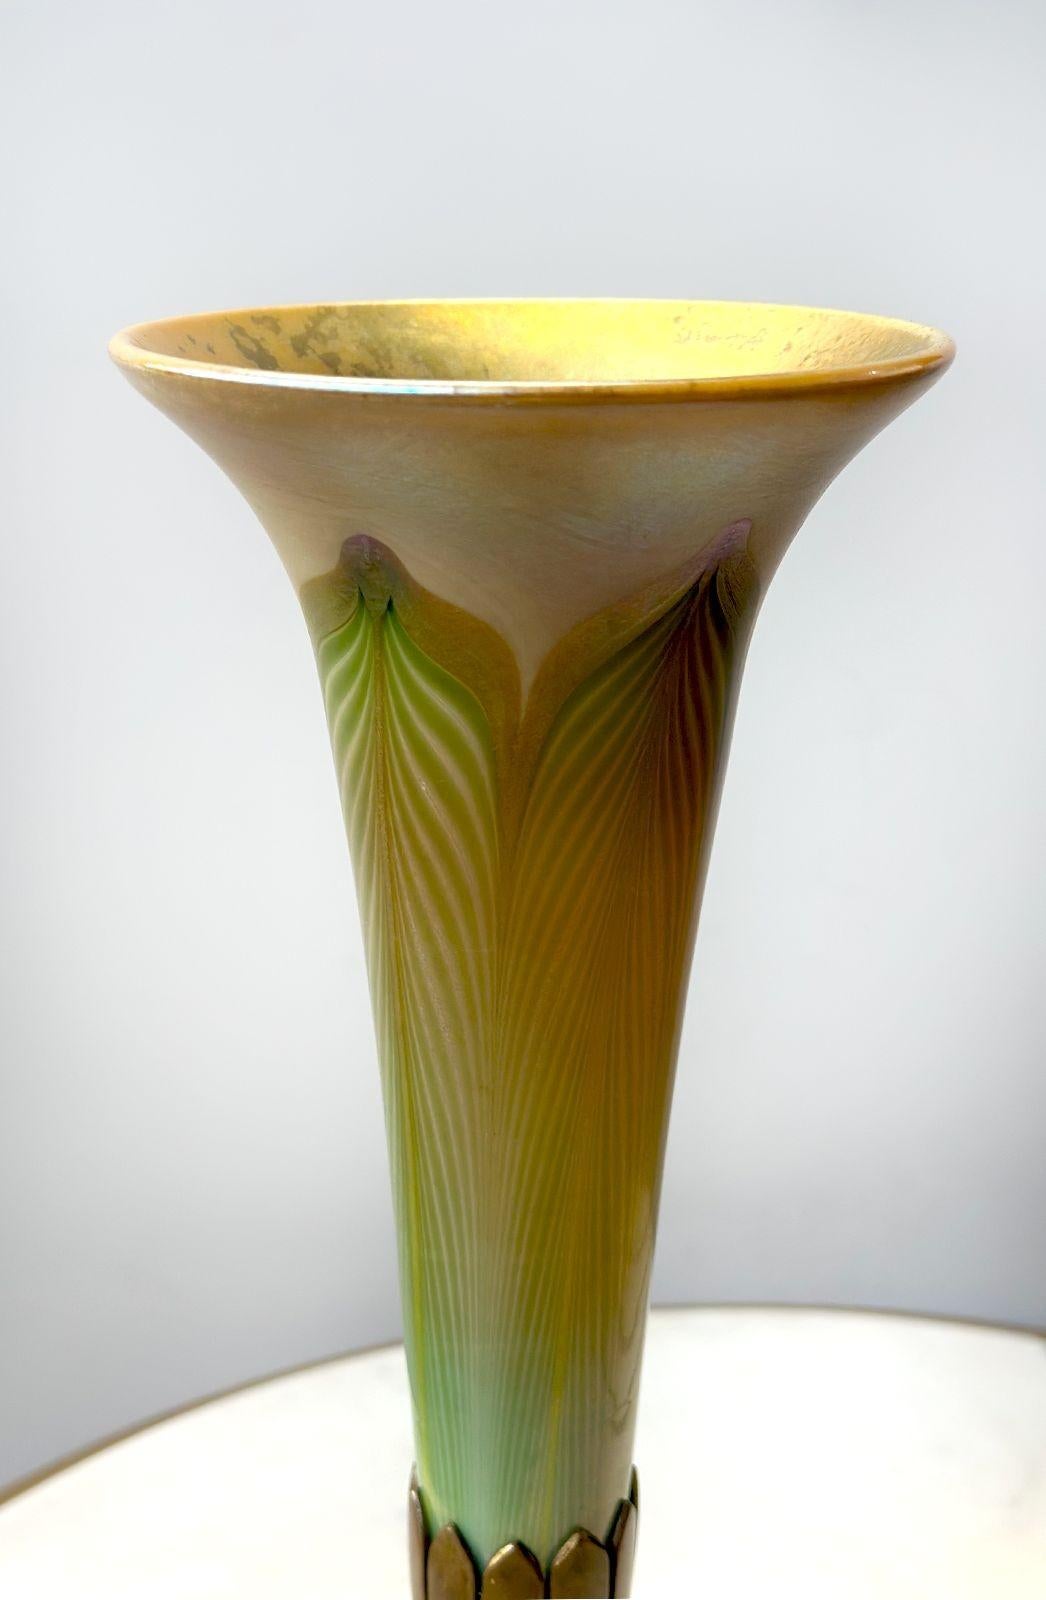 Magnifique vase en verre Favrile à plumes tirées de Tiffany Studios, de forme unique en trompette. Le séduisant verre favrile est composé de tons dorés et verts qui se marient parfaitement avec la base en bronze doré qui soutient gracieusement